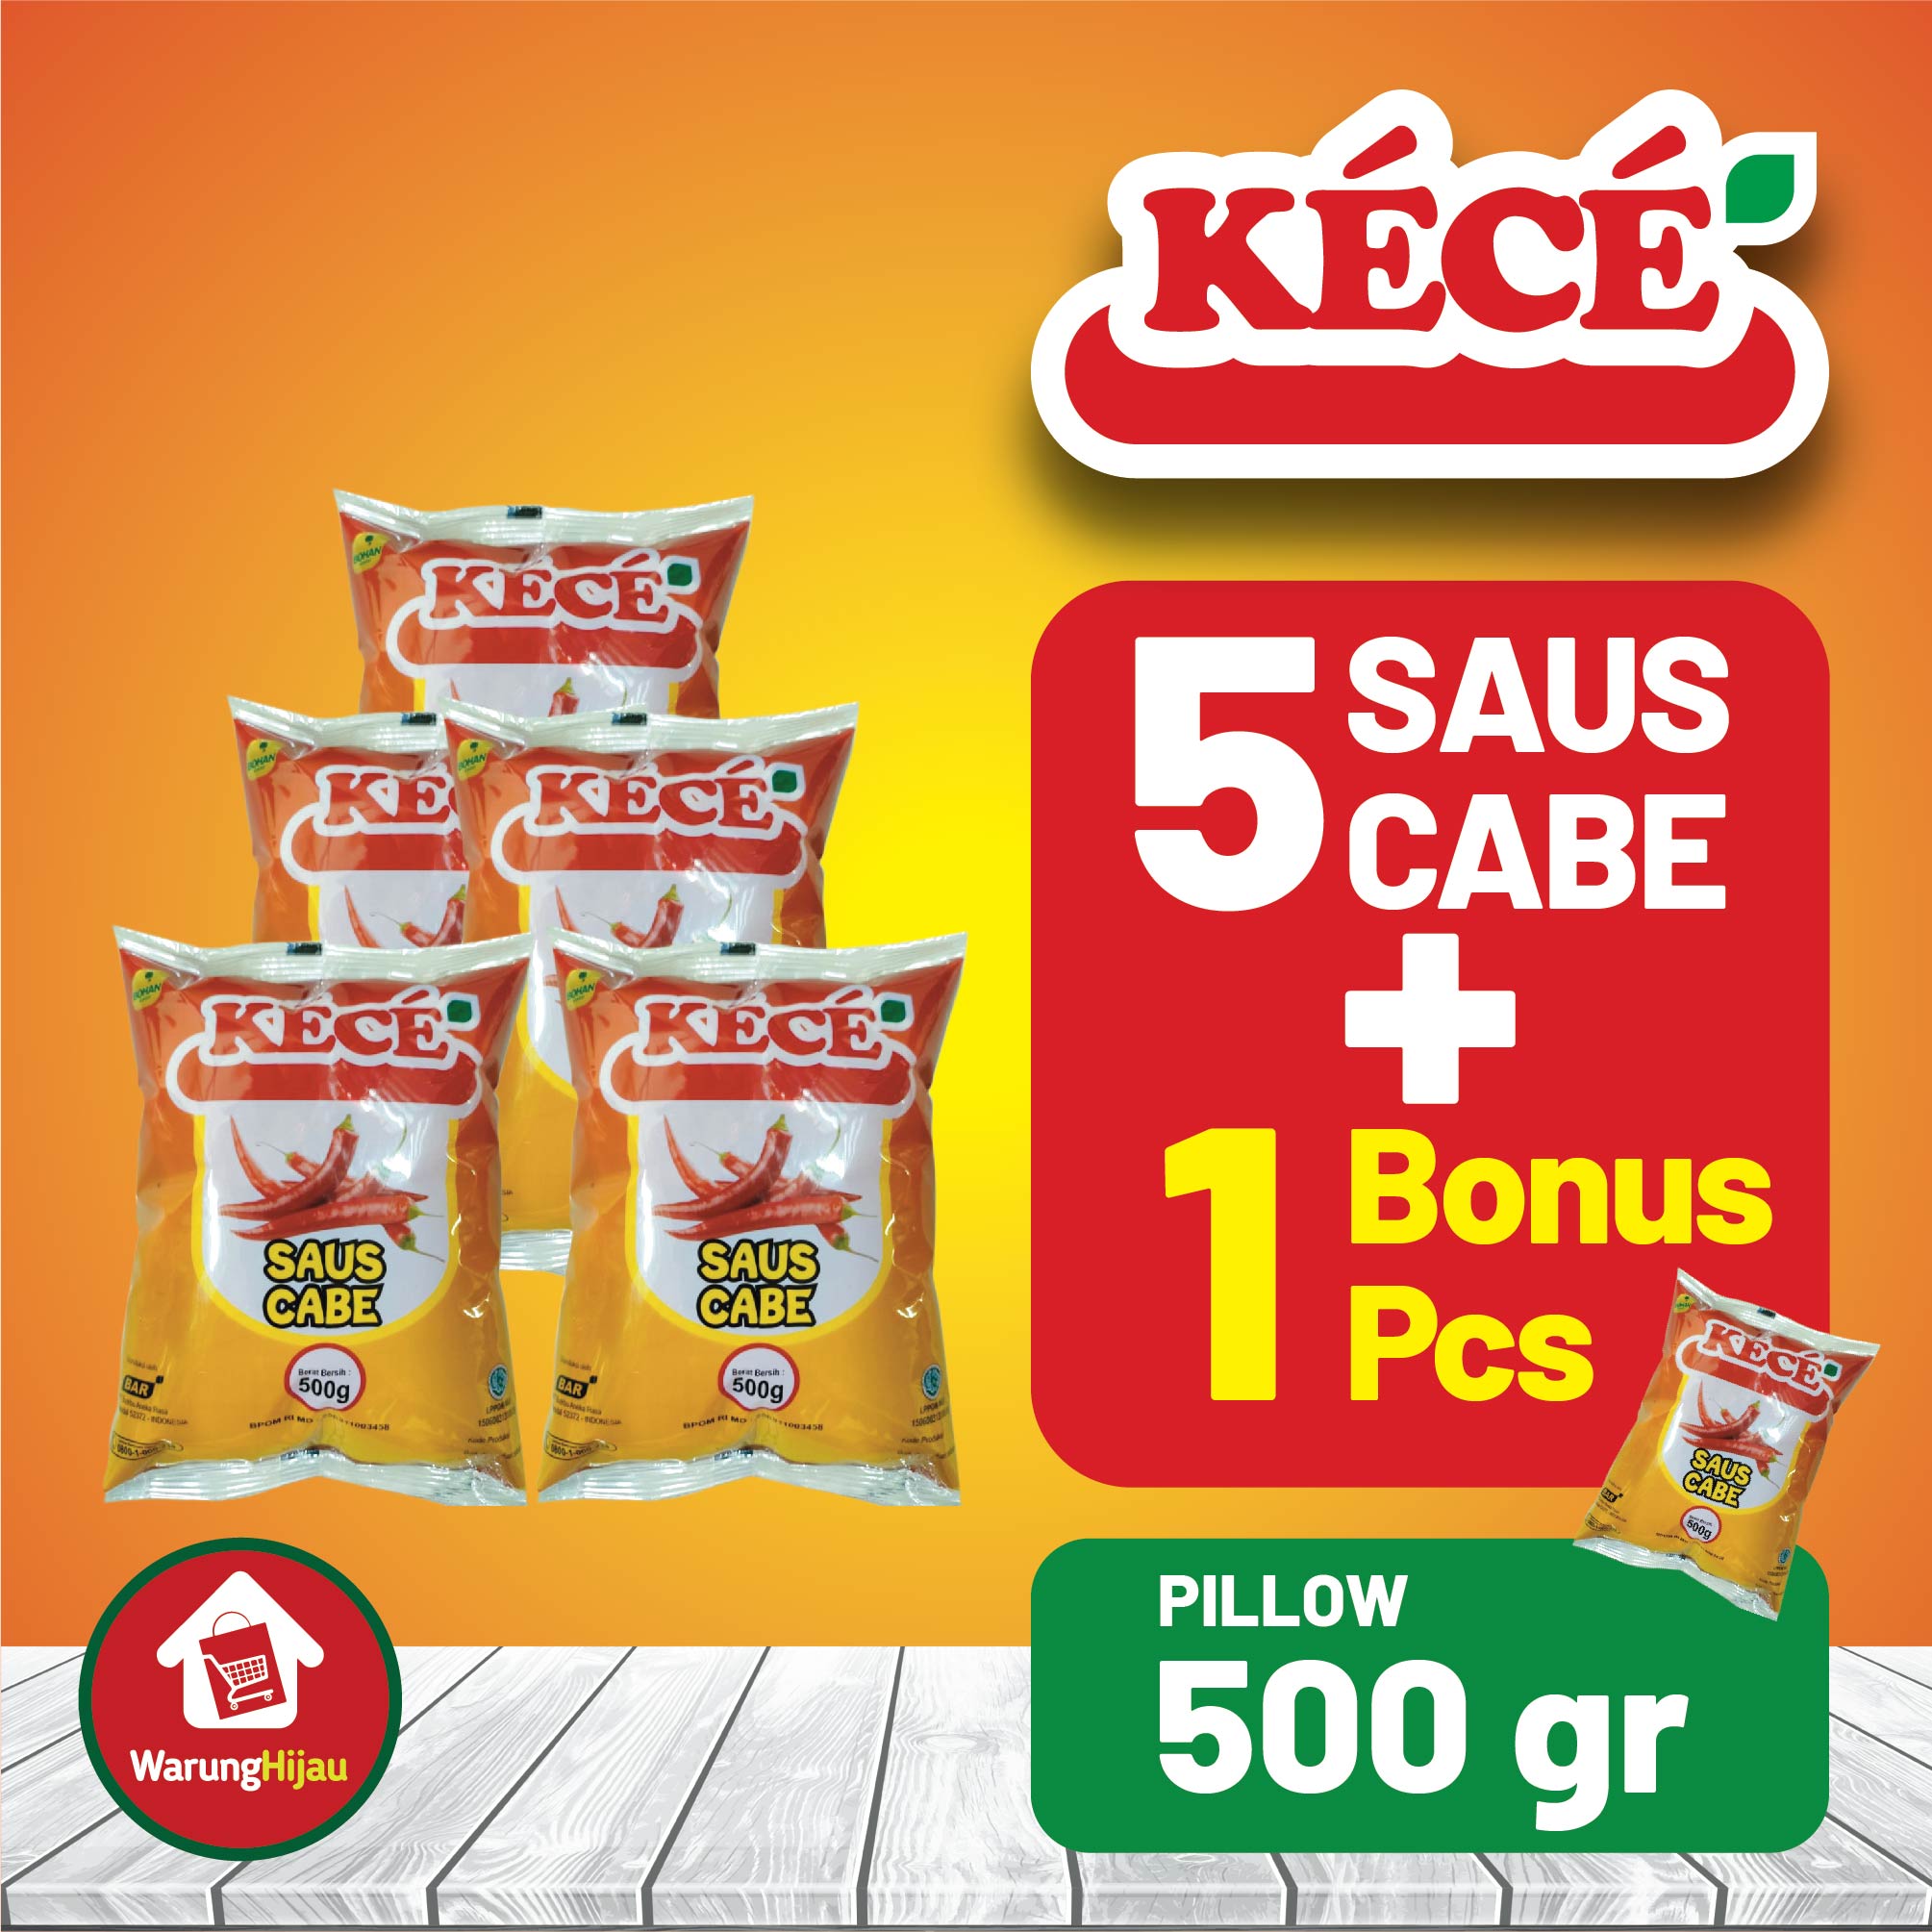 Saus Cabe KECE Pillow 500 gr 5 Pcs - Bonus 1 Pcs